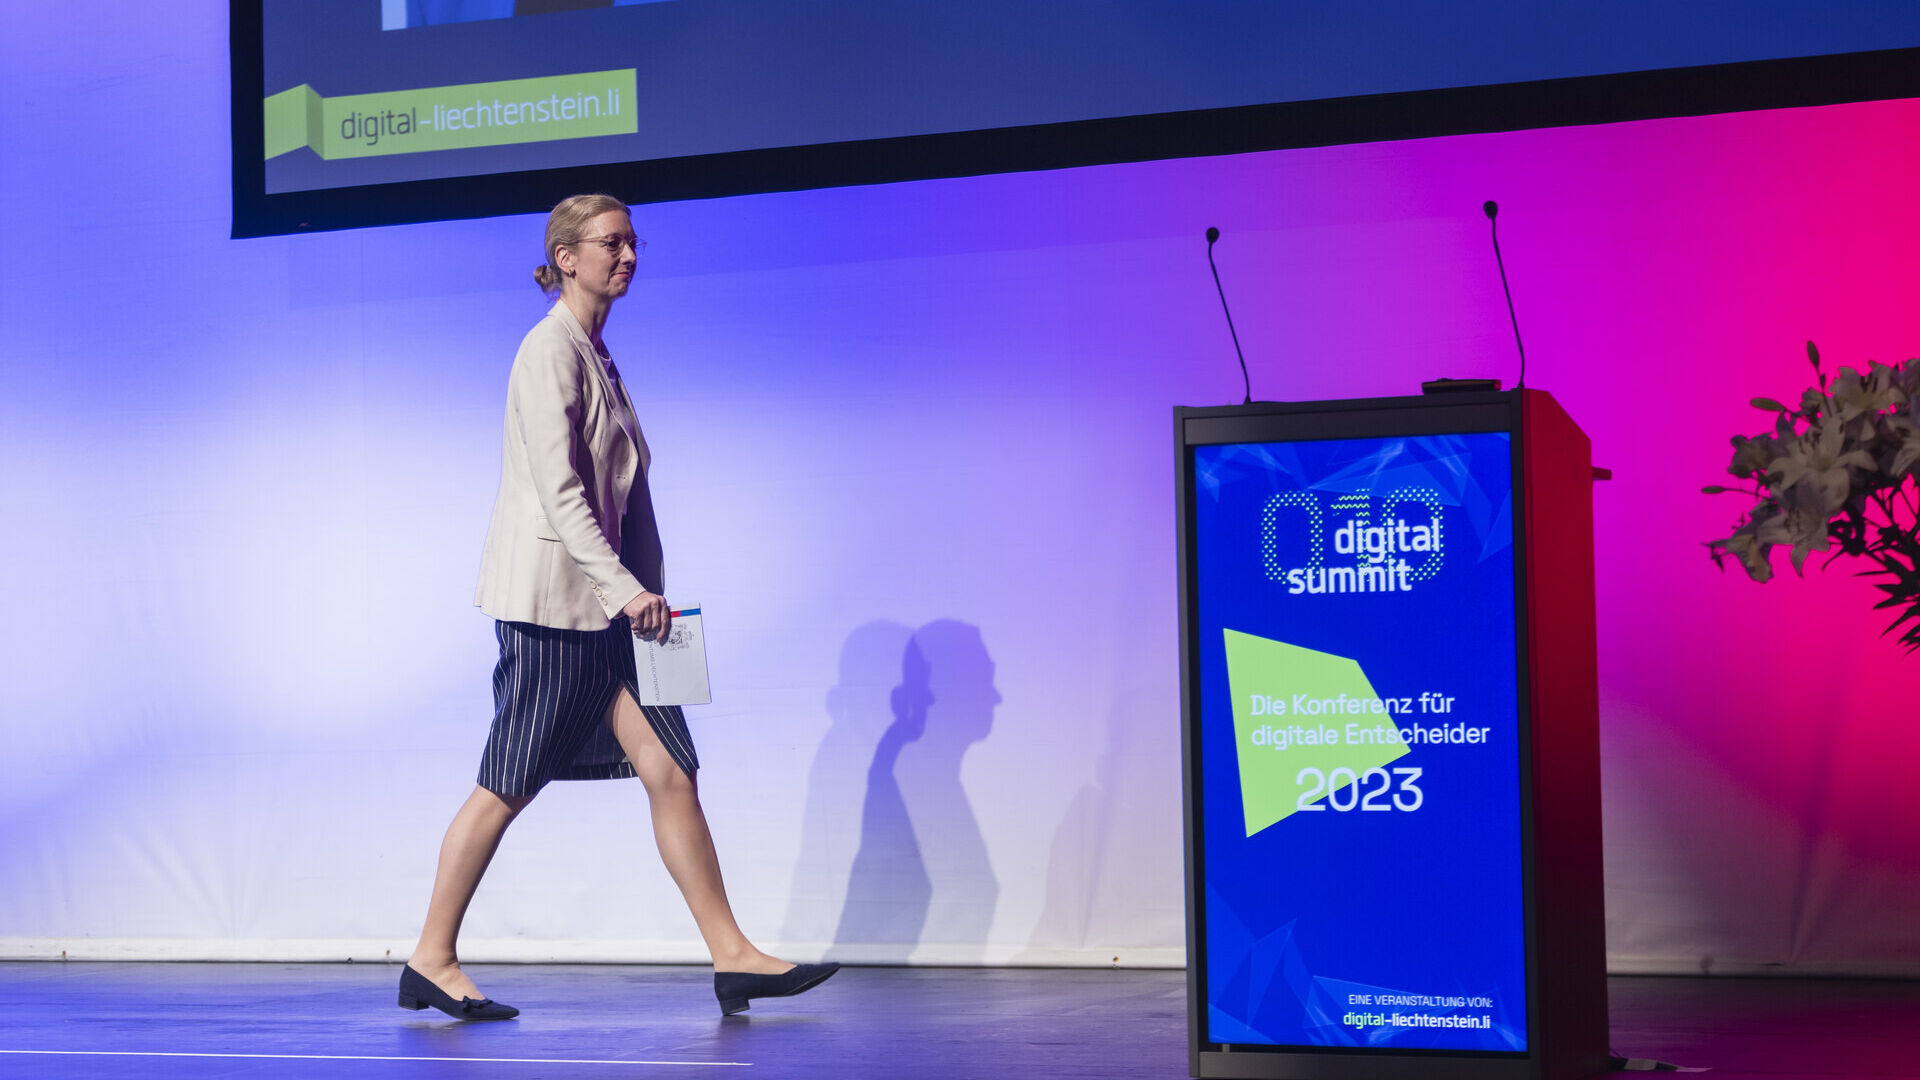 Digital Summit 2023: Sabine Monauni